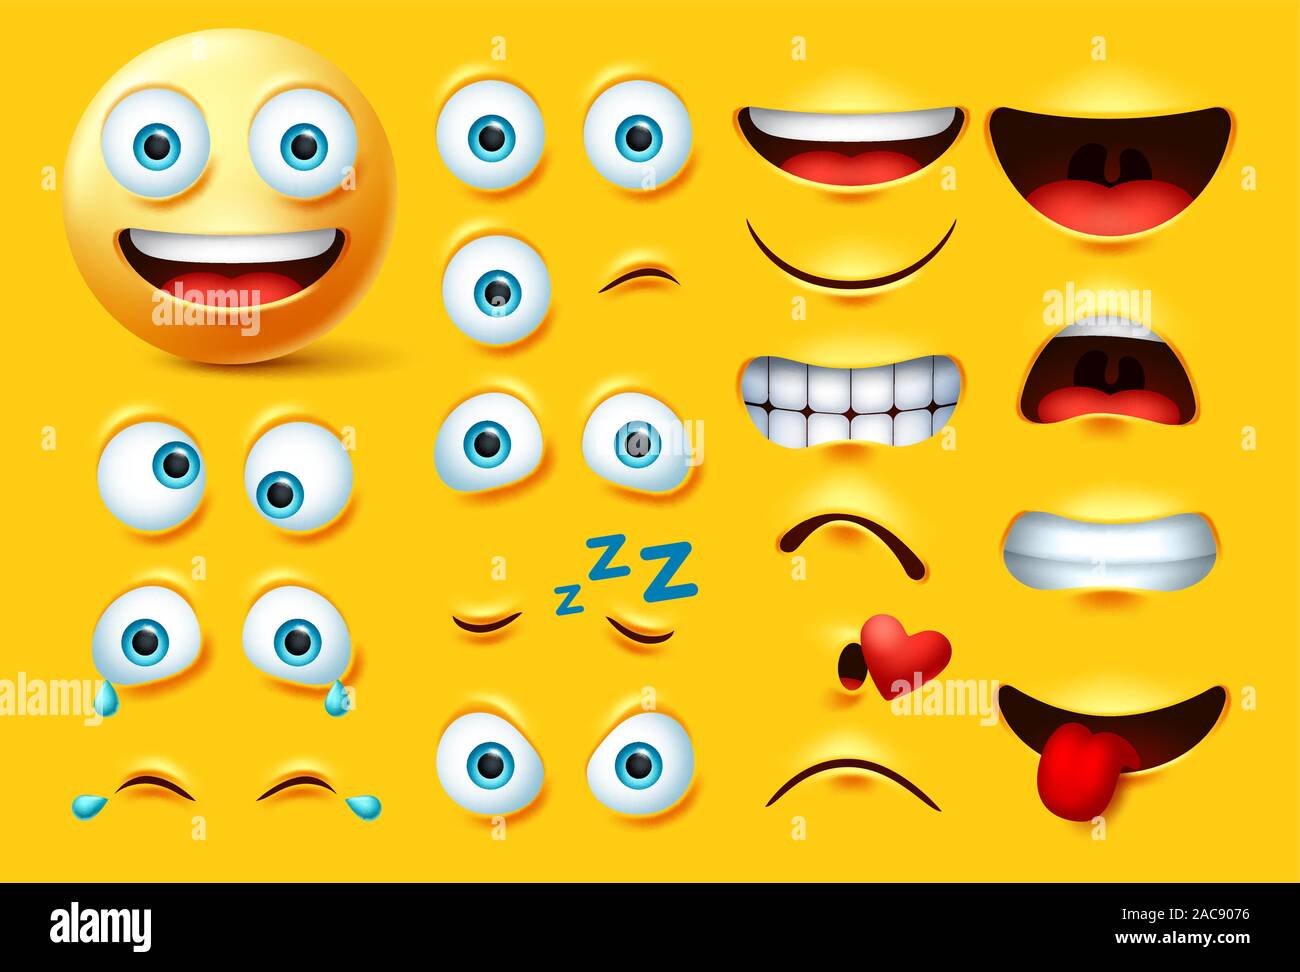 Smiley emoticon carattere vettore di creazione set. Gli Emoji Smiley face kit occhi e bocca in collera, crazy, piangere, naughty, baciare e ridere espressione. Illustrazione Vettoriale